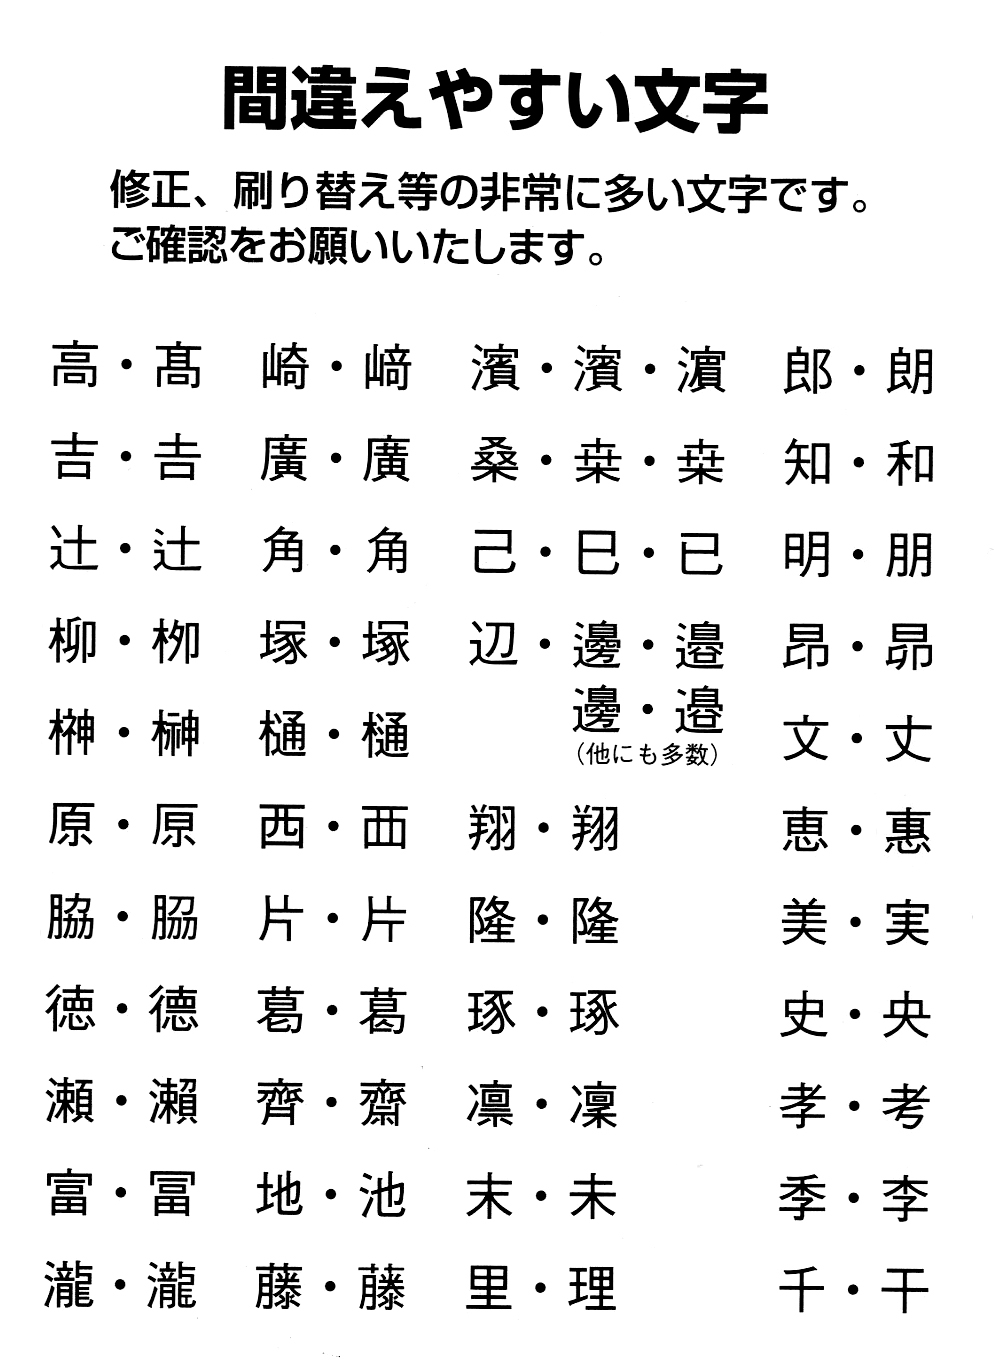 苗字の漢字は組み合わせがいっぱい 印刷前に気をつけたいポイント 卒業アルバム制作専門キューズプラス